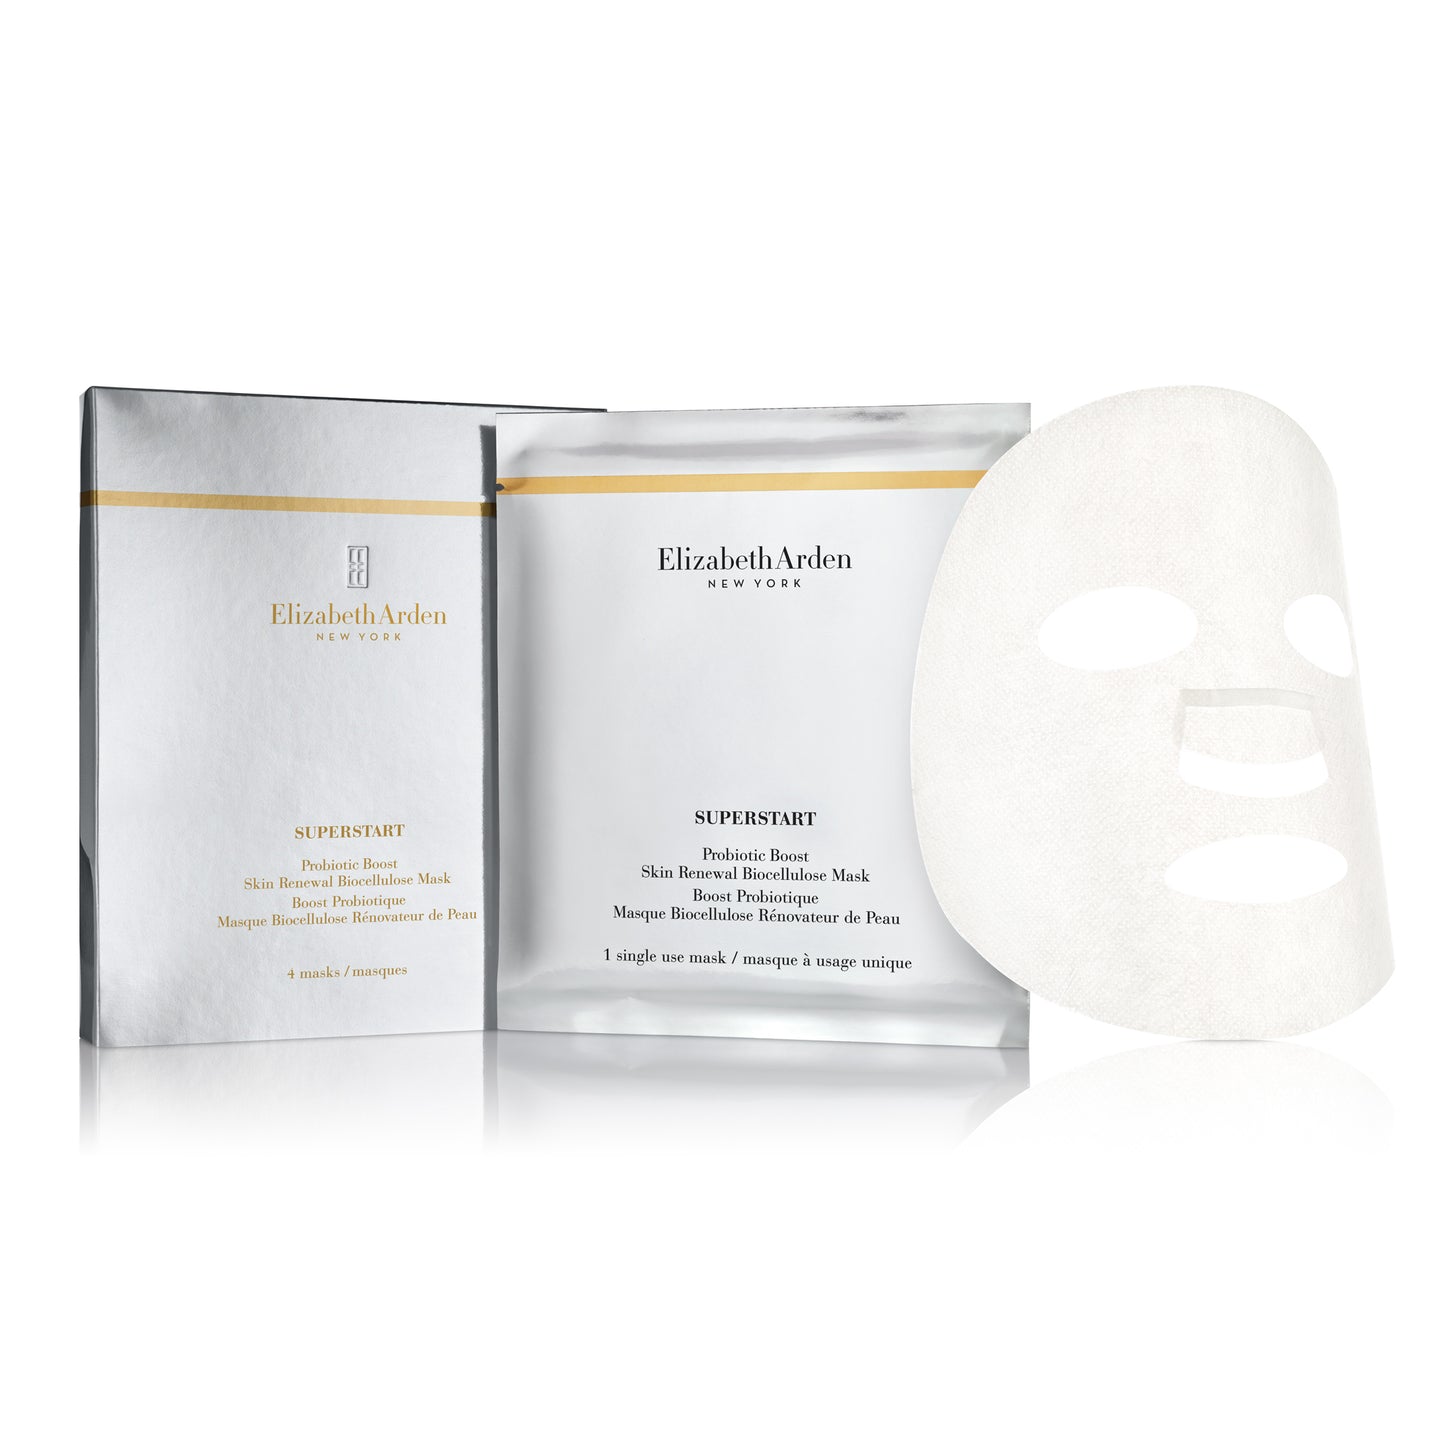 Elizabeth Arden Superstart Probiotic Boost Skin Renewal Biocellulose Mask